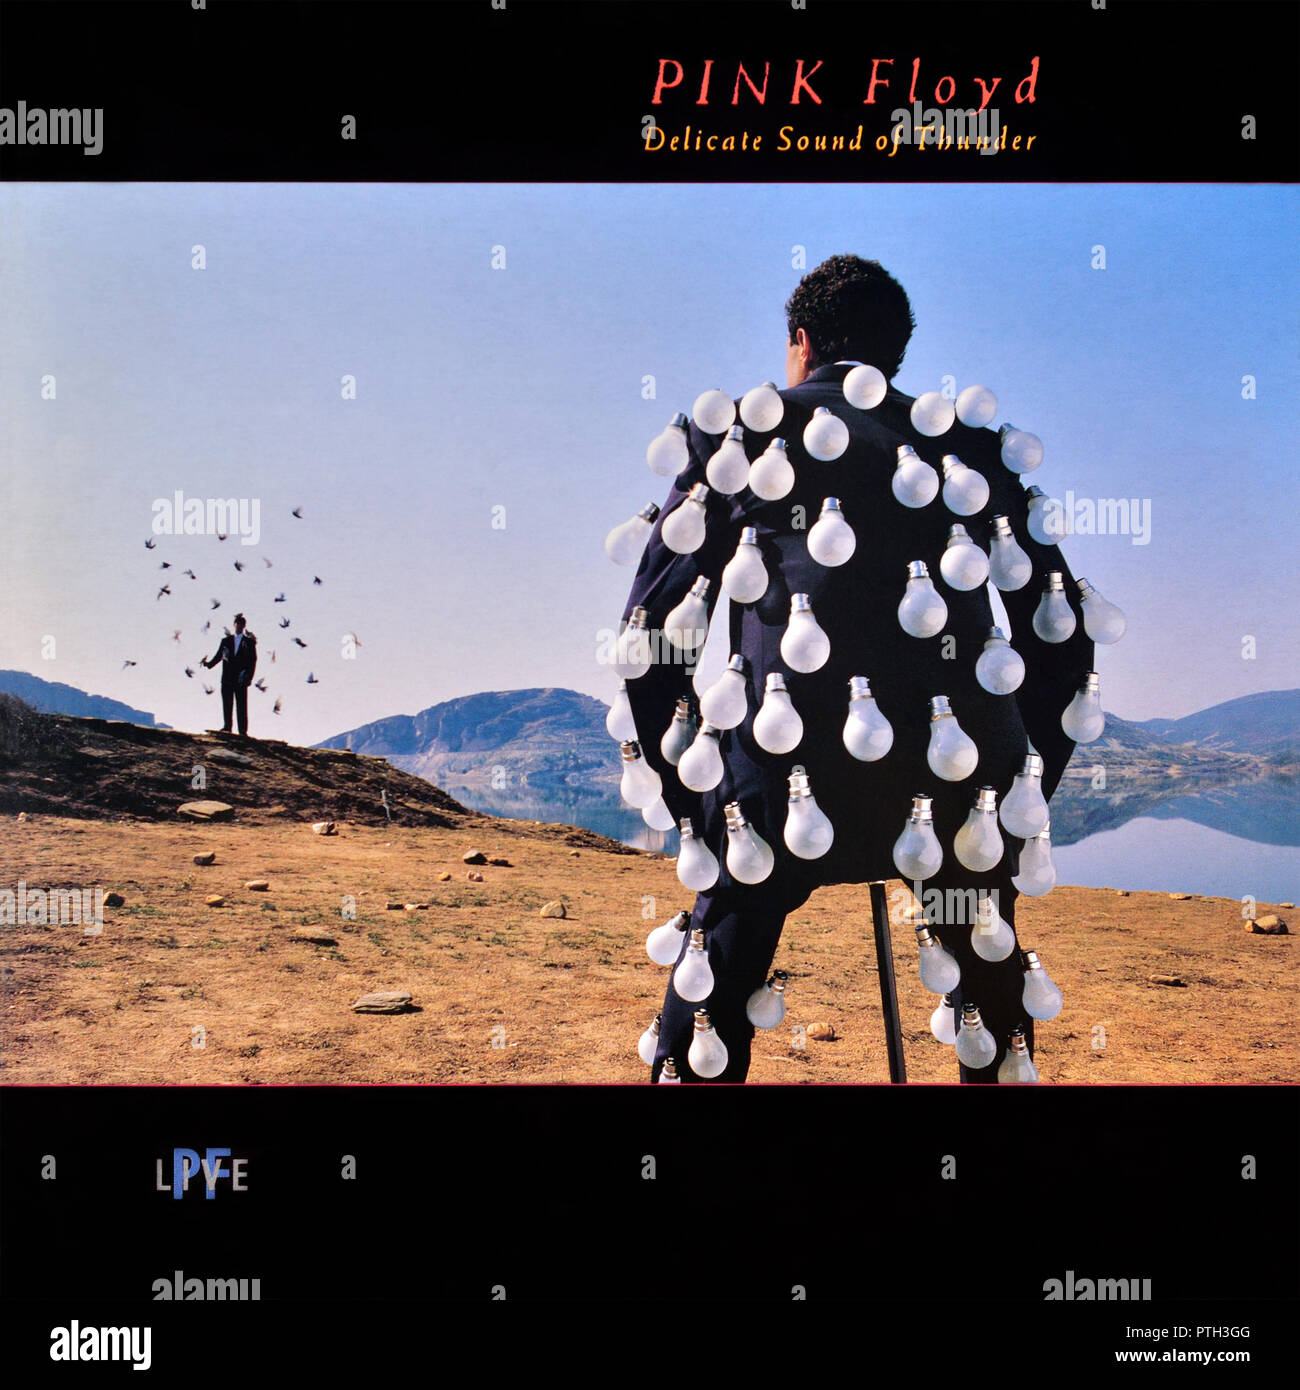 Pink Floyd - portada original del álbum de vinilo - Delicate Sound of Thunder - 1988 Foto de stock